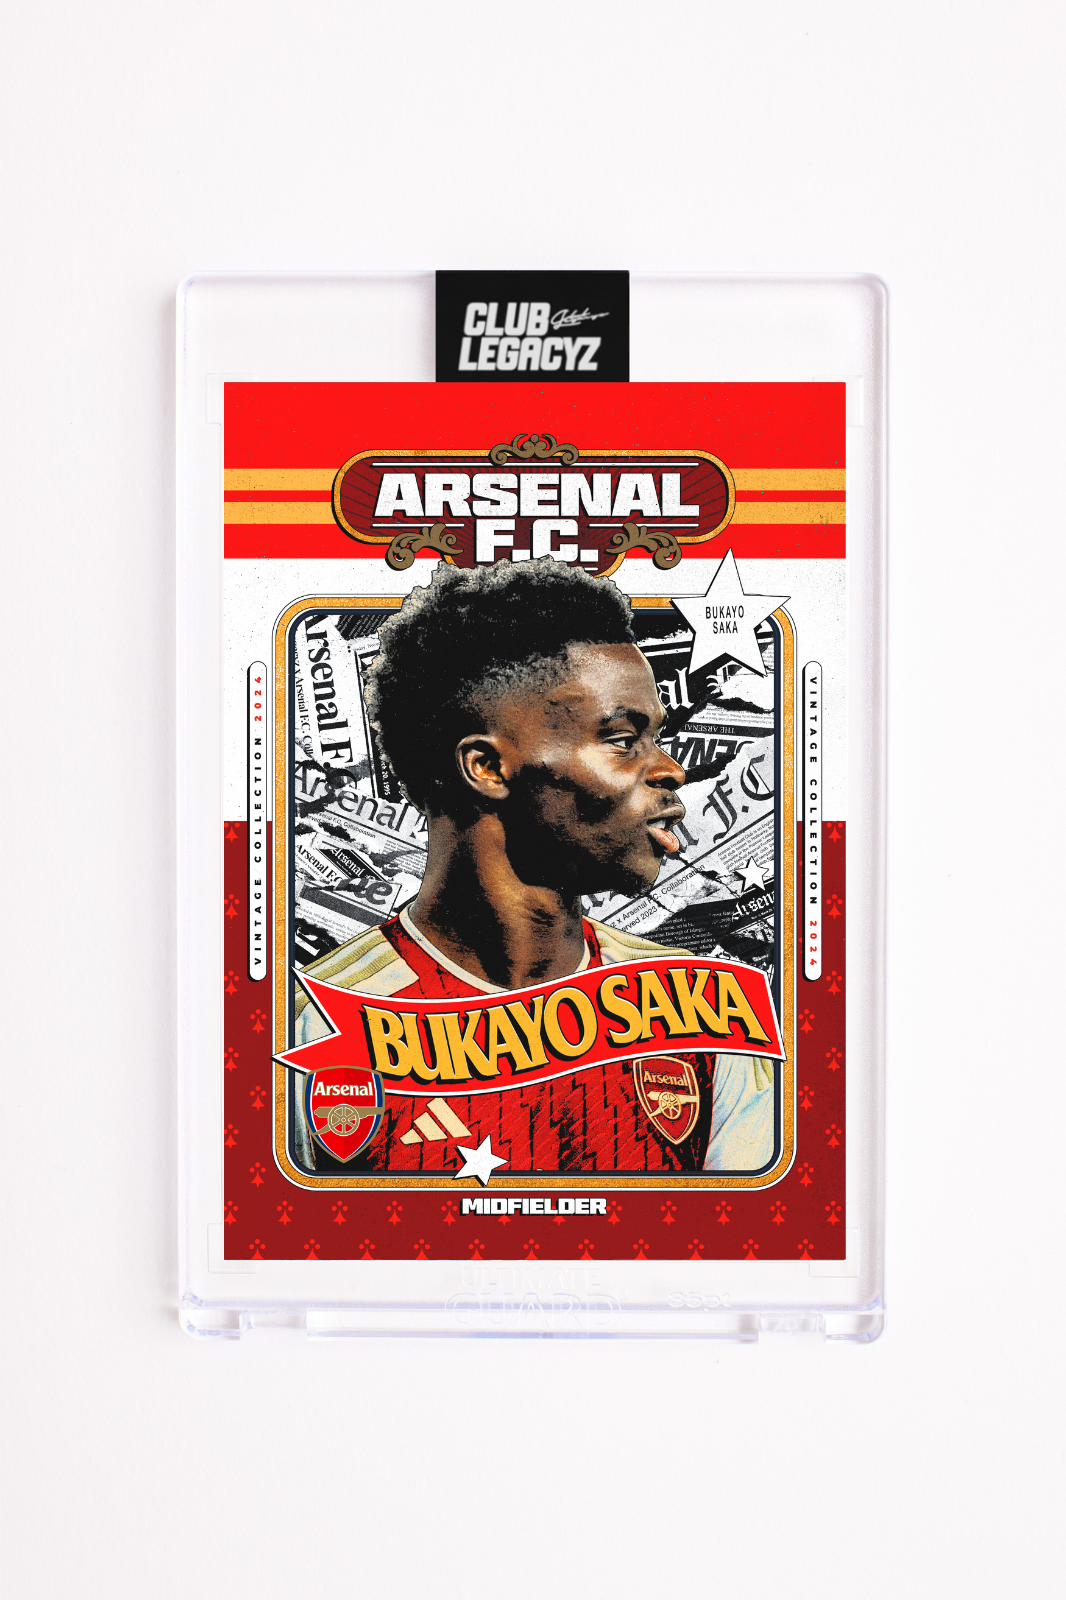 Arsenal FC - Bukayo Saka Retro Icon limited to 100